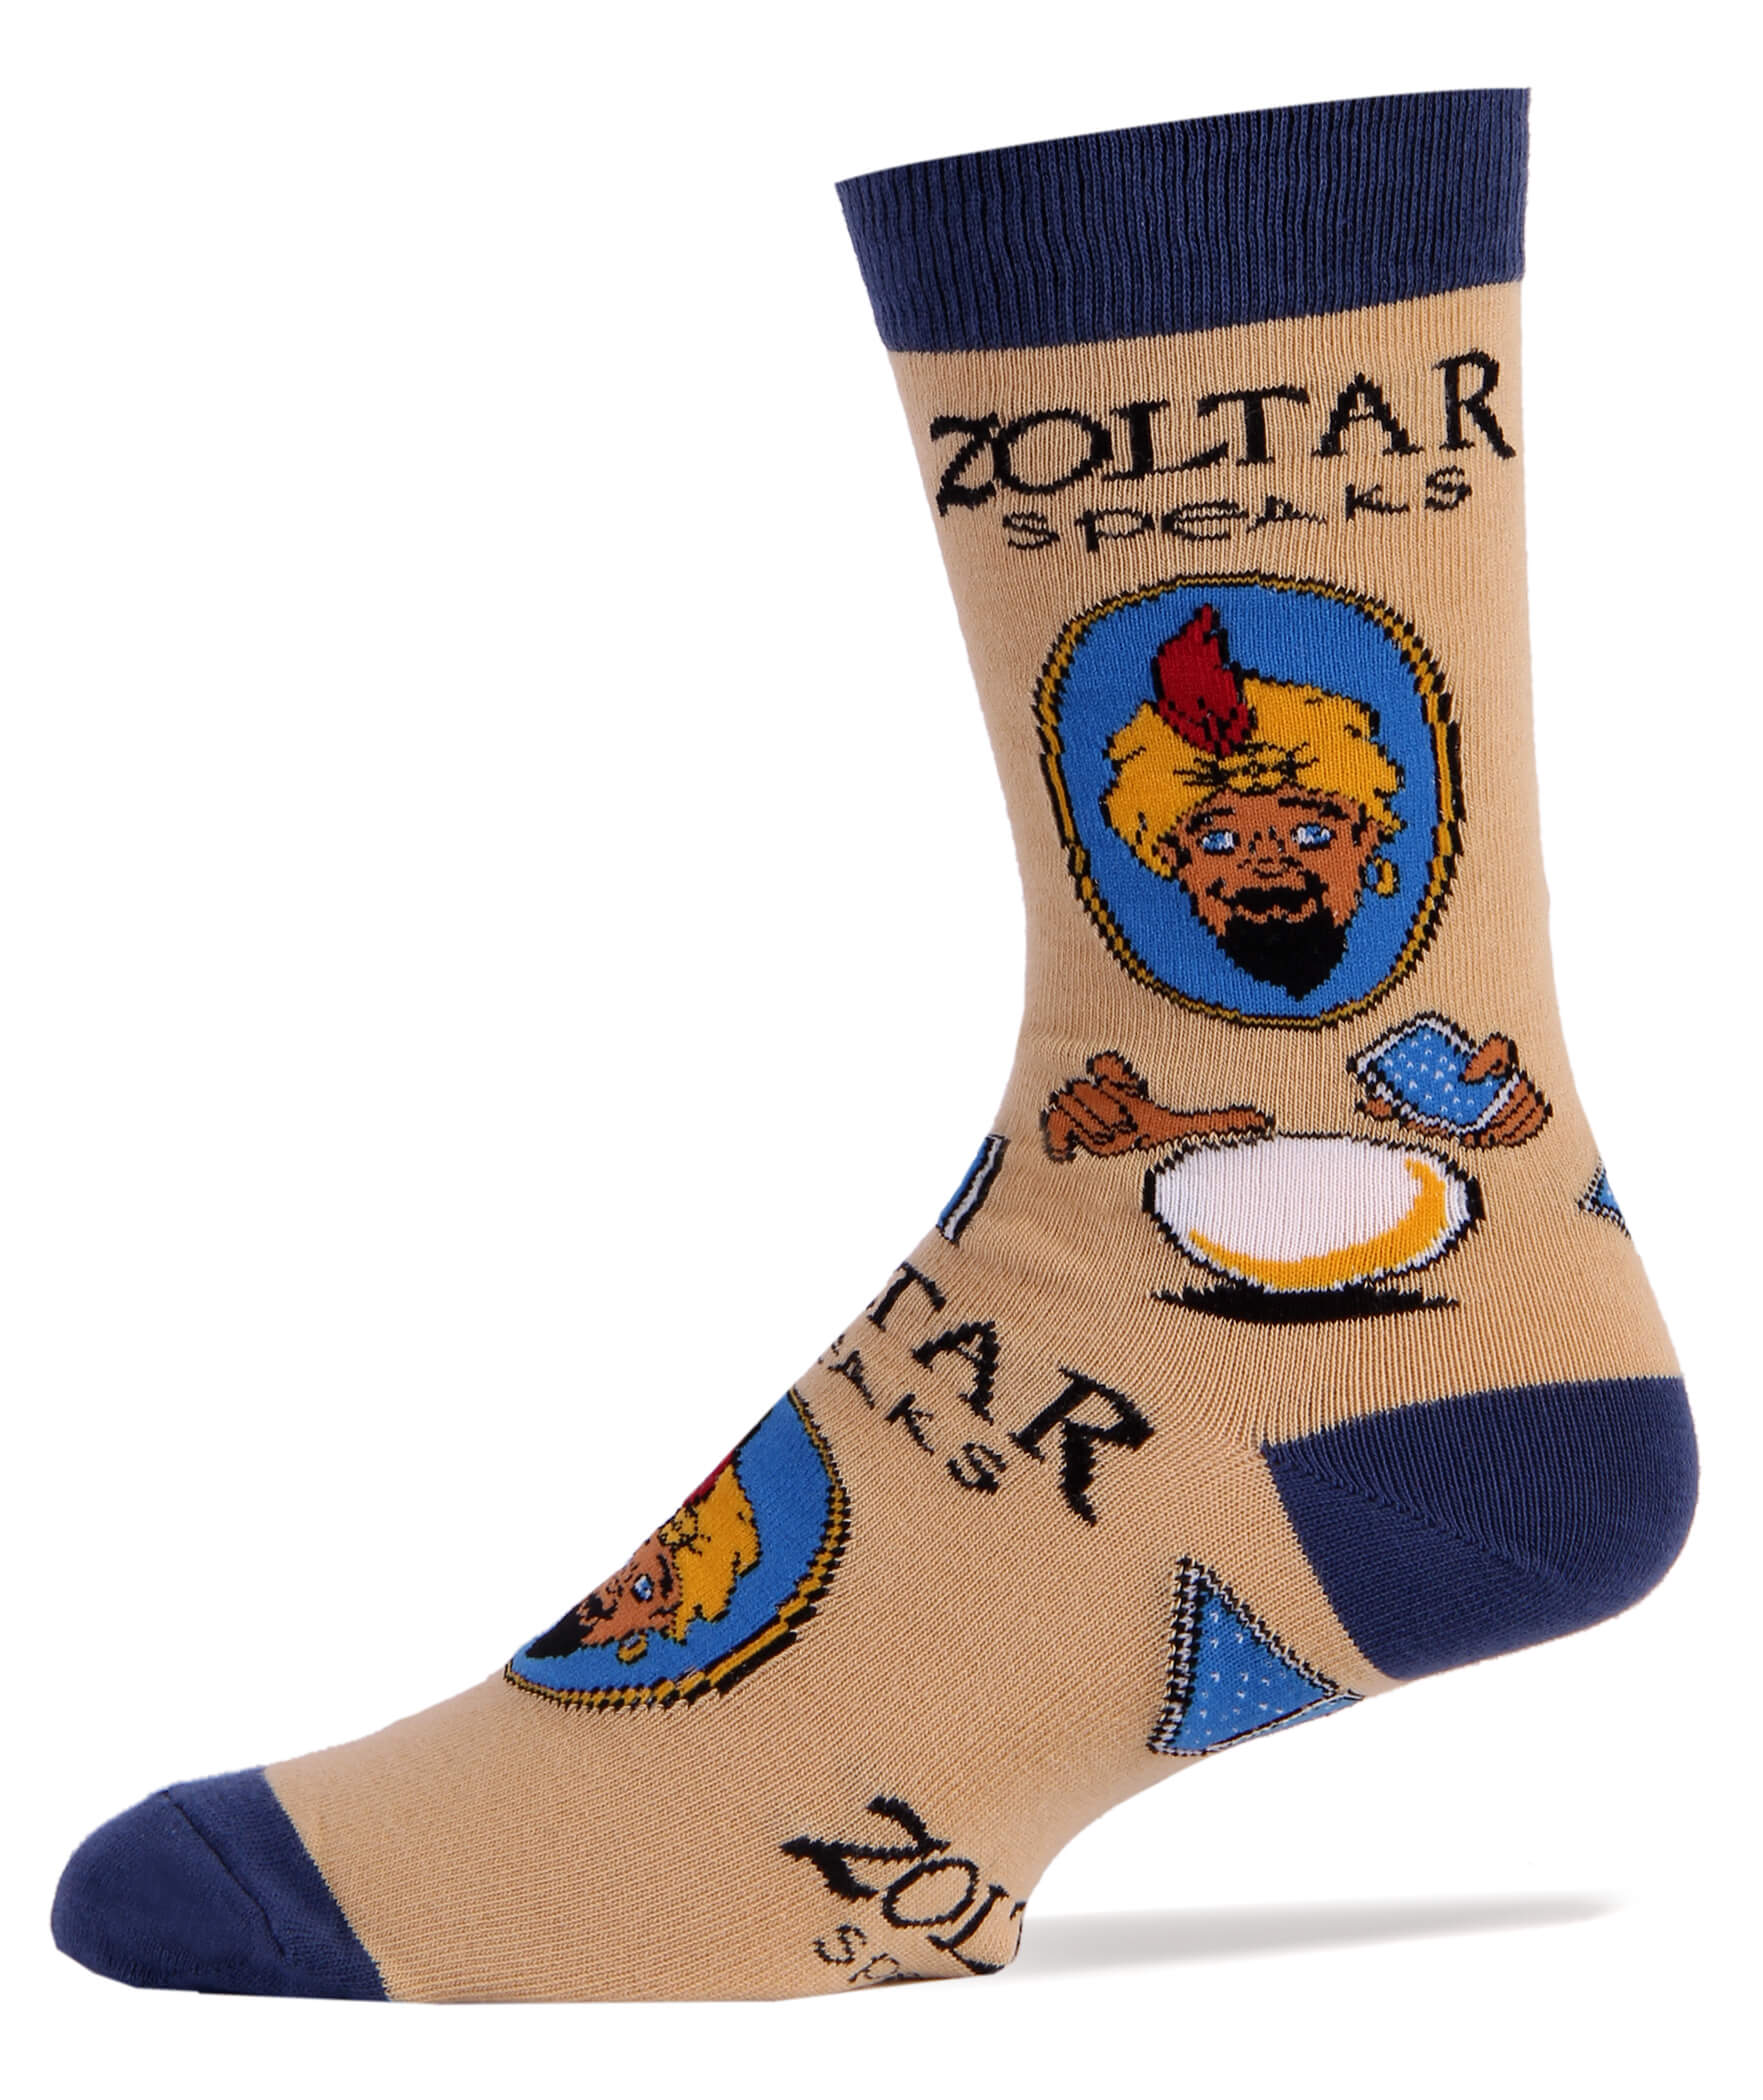 Zoltar Speaks Socks